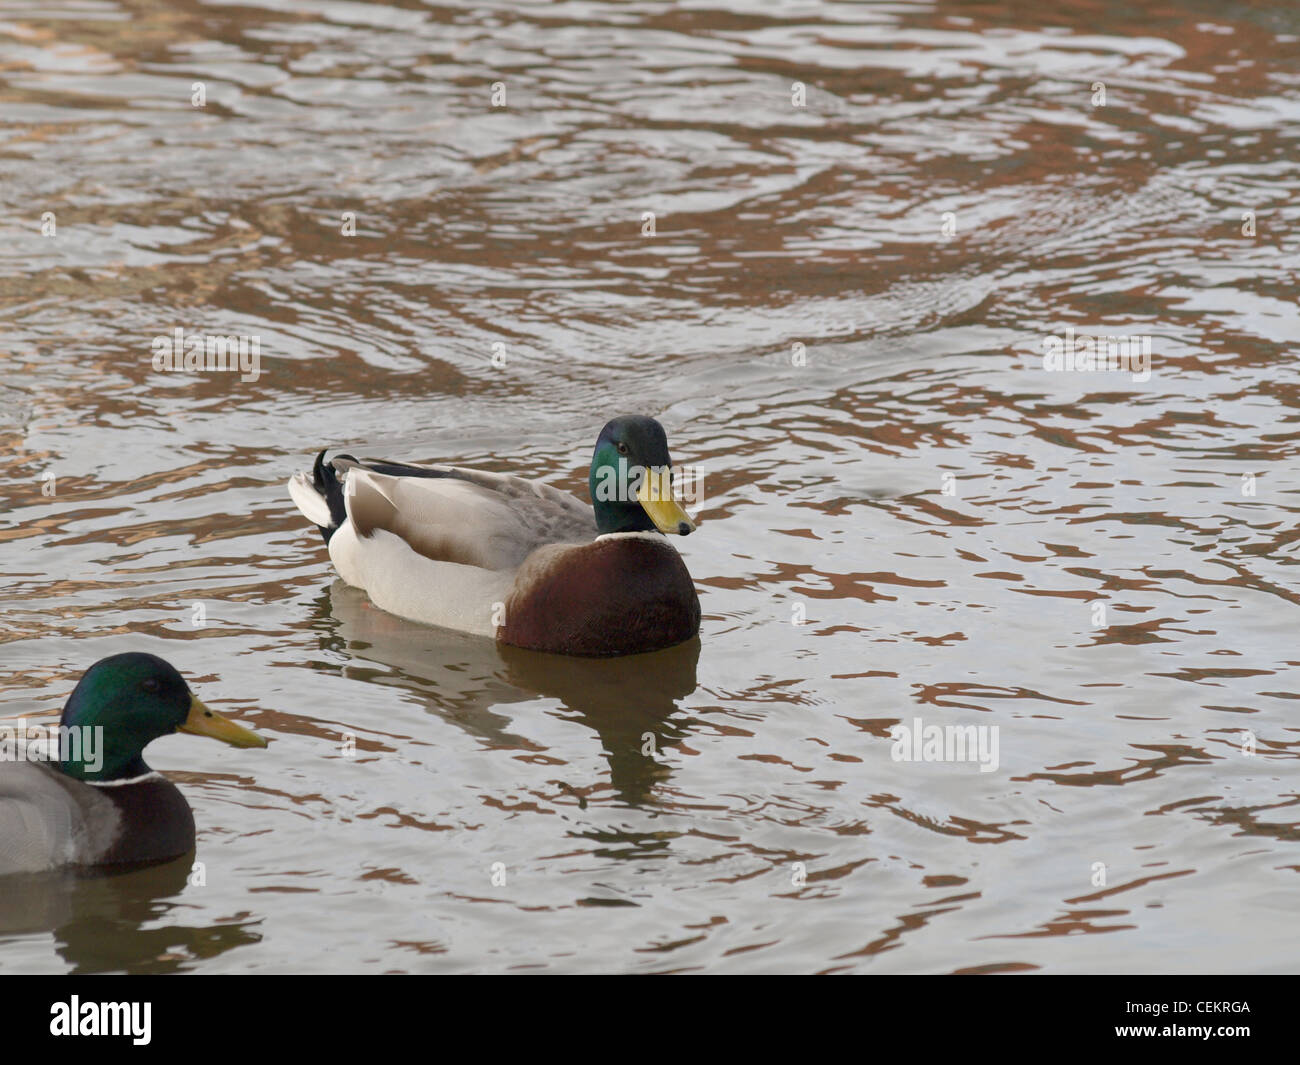 wild ducks, mallards in water / Anas platyrhynchos / Wildenten, Stockenten im Wasser Stock Photo